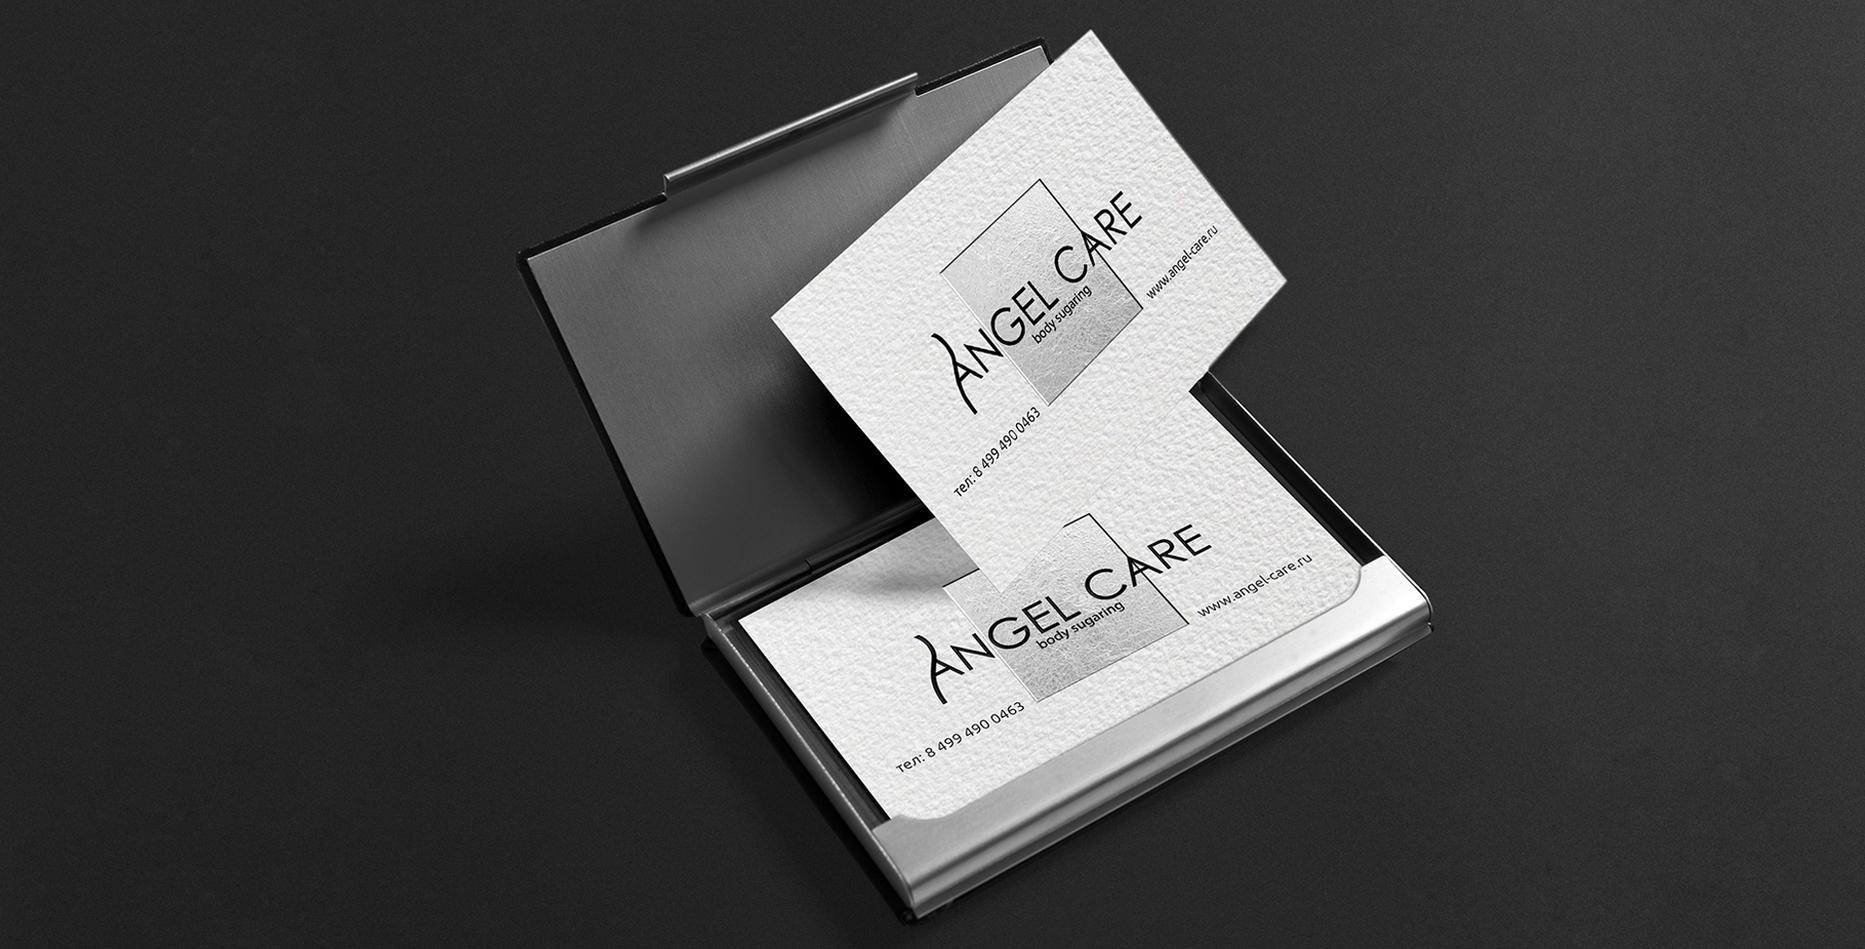 Кейс: логотип, фірмовий стиль, рекламна продукція для Angel Care — Rubarb - Зображення - 11